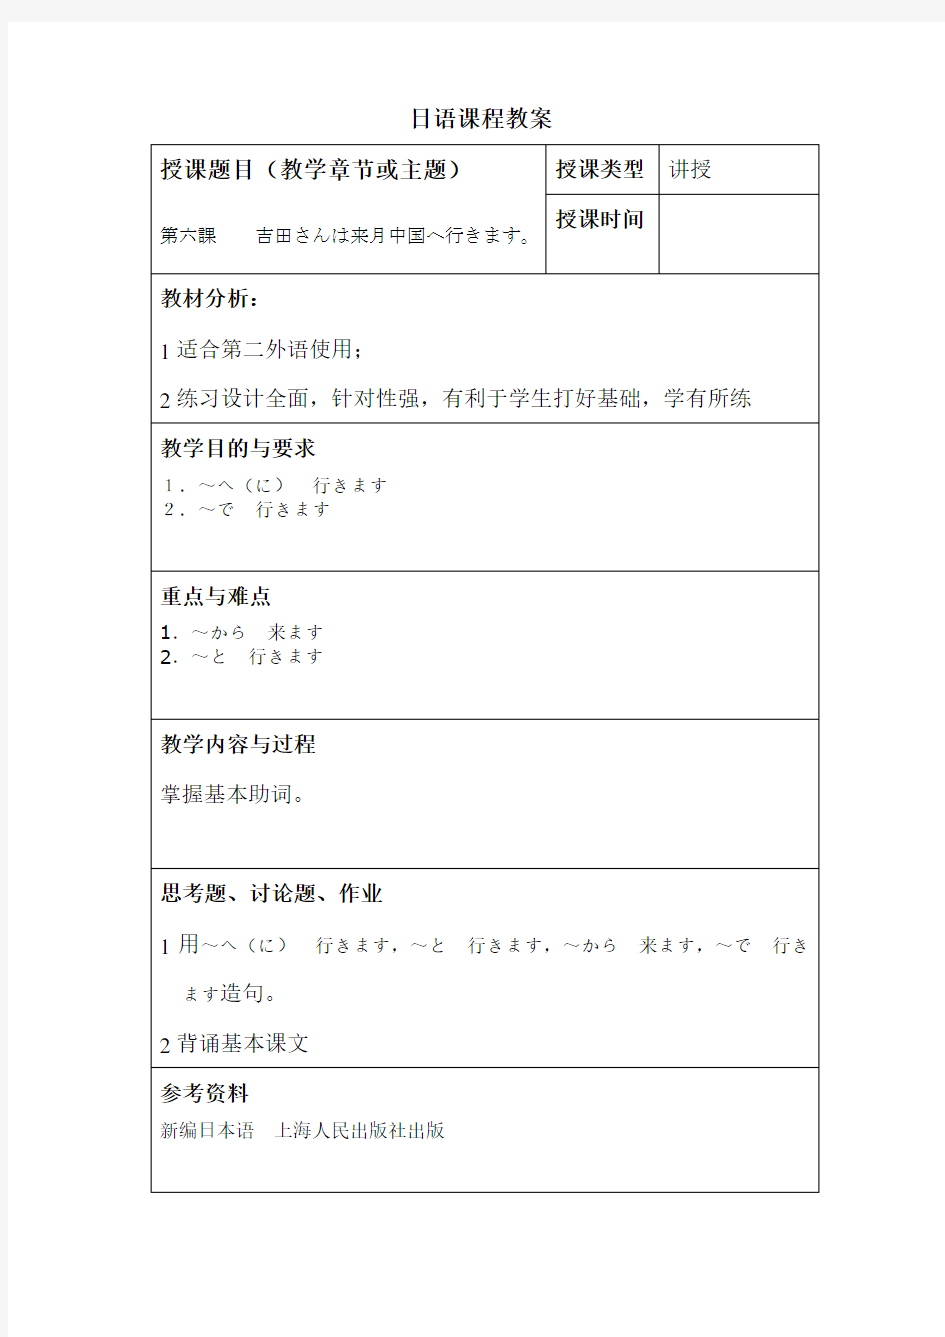 标准日本语教案 - 第6课